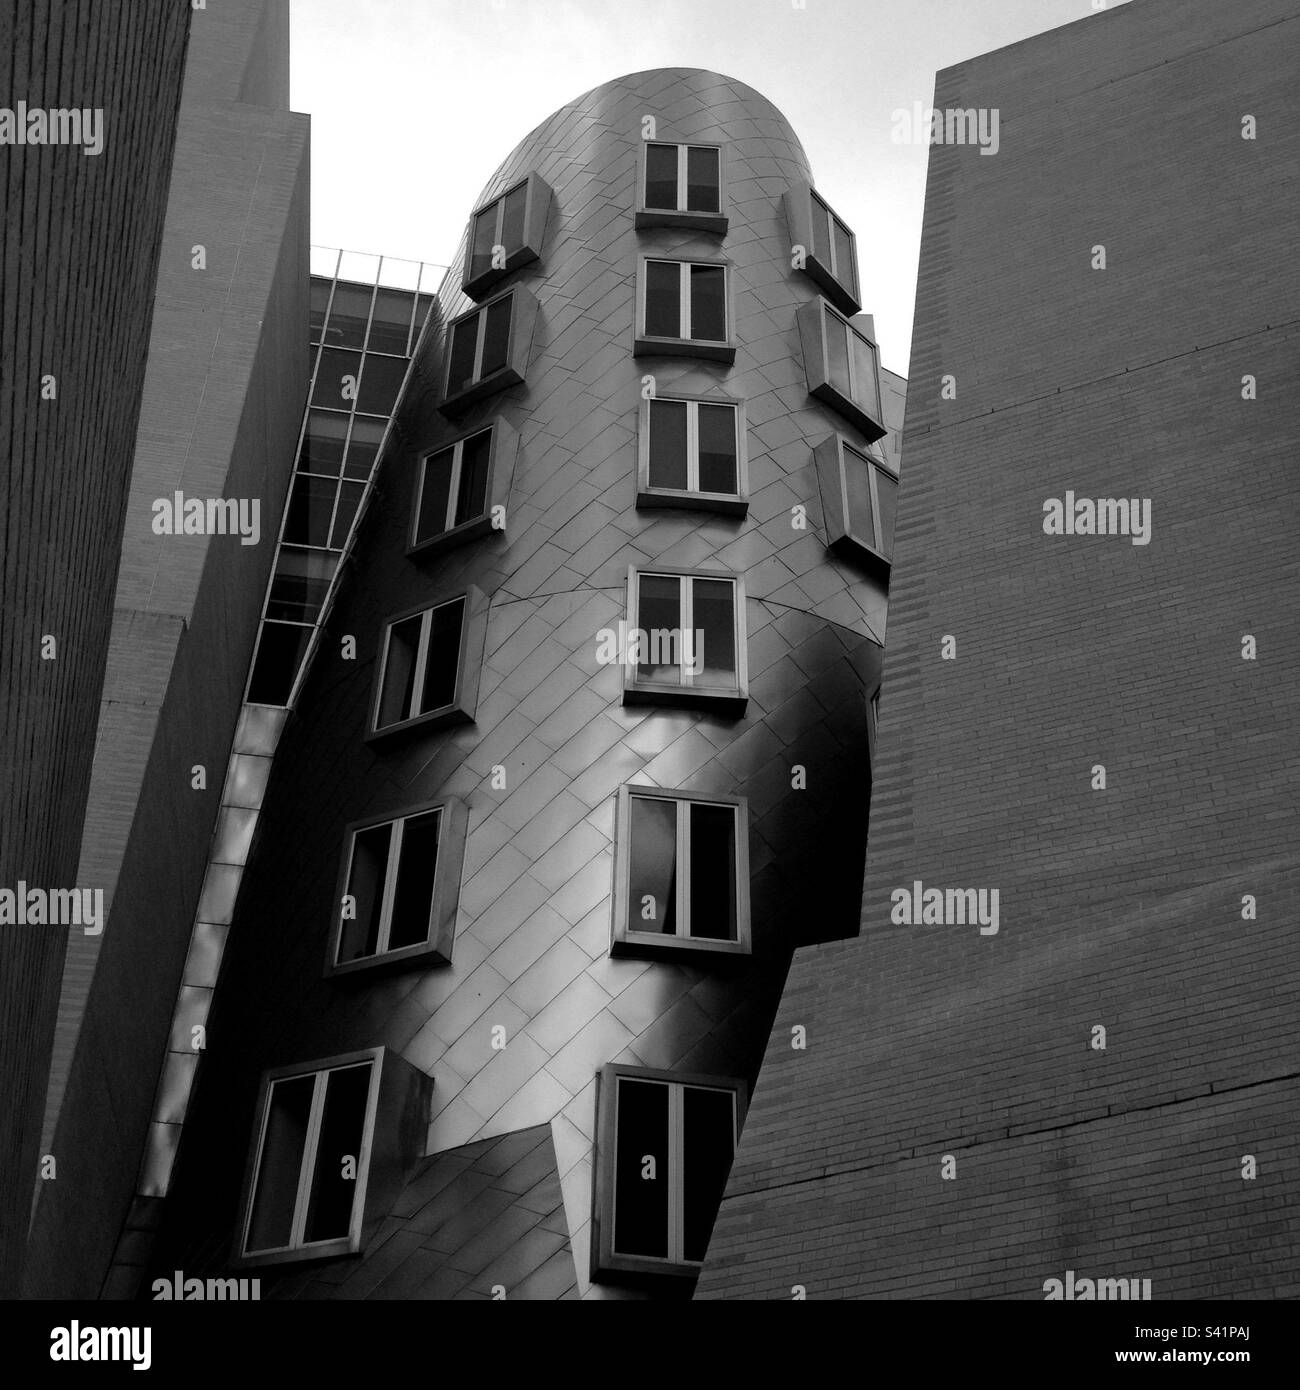 Vue en noir et blanc du Ray and Maria Stata Center, ou bâtiment 32, sur le campus du Massachusetts Institute of Technology (MIT). L'architecte était Frank Gehry. Banque D'Images